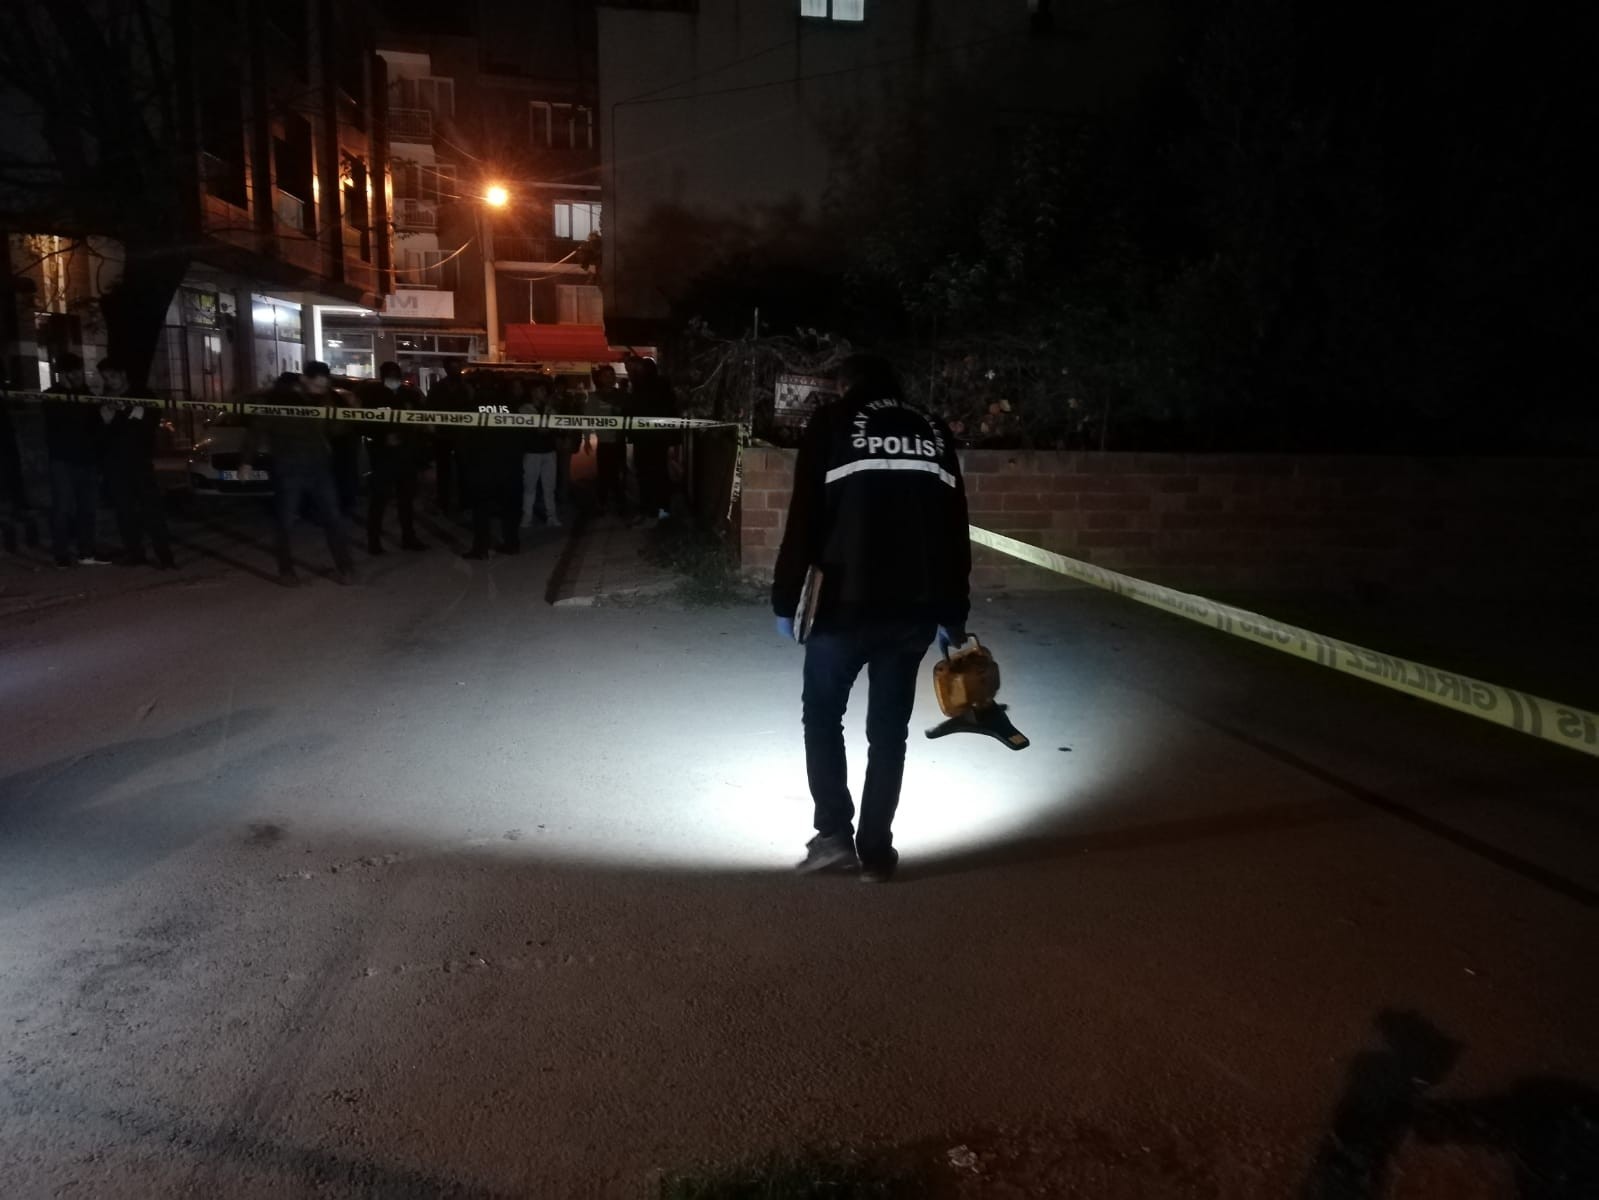 İzmir’de sokak ortasında silahla vurulan kişi öldü #izmir